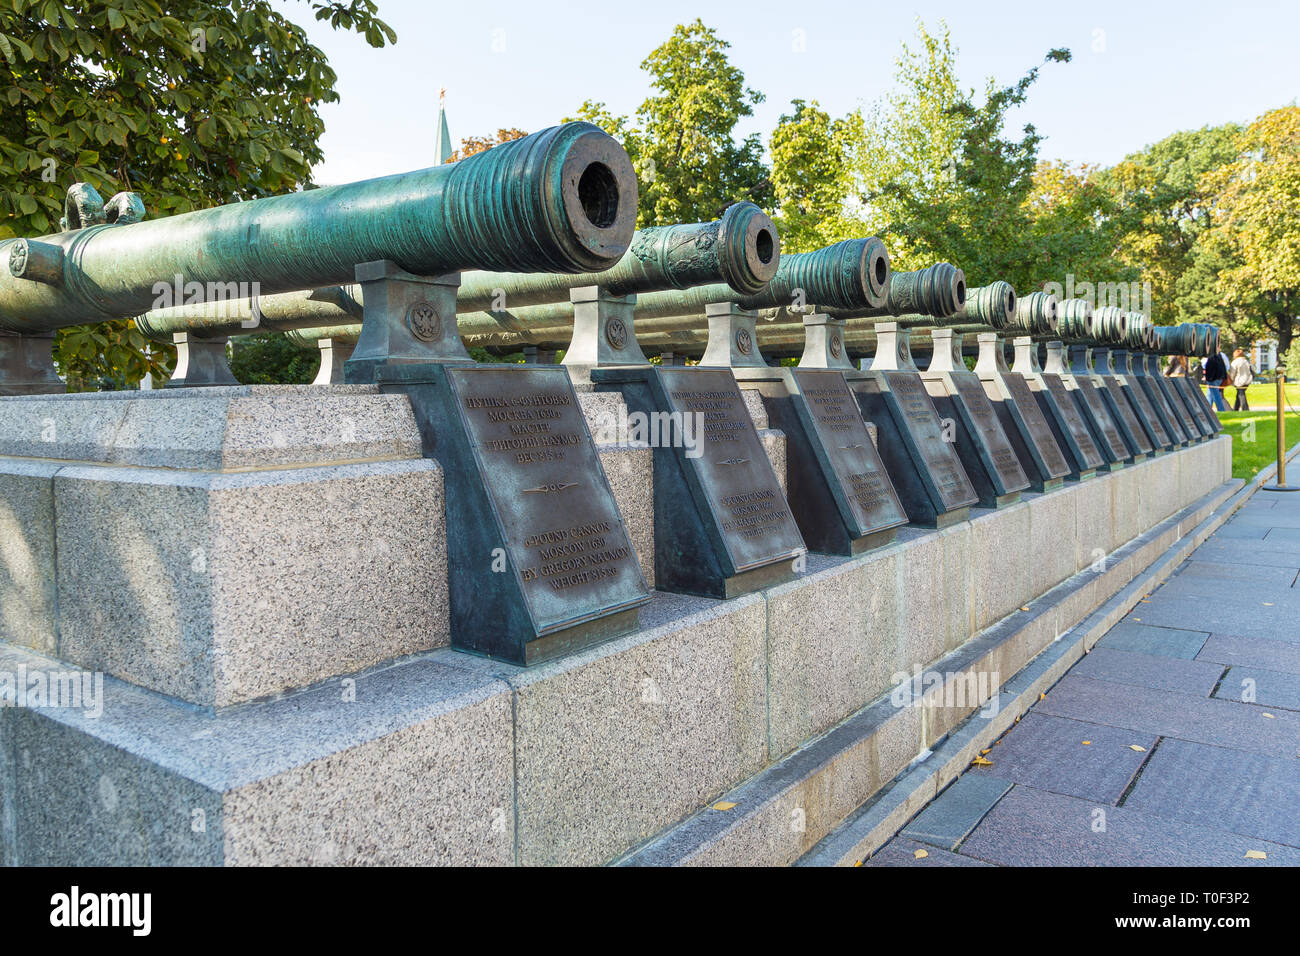 Mosca, Russia - 22 Settembre 2014: Visualizzazione dei cannoni sulla Piazza Rossa, monumento di artiglieria russa. Museo del Cremlino di Mosca. Foto Stock